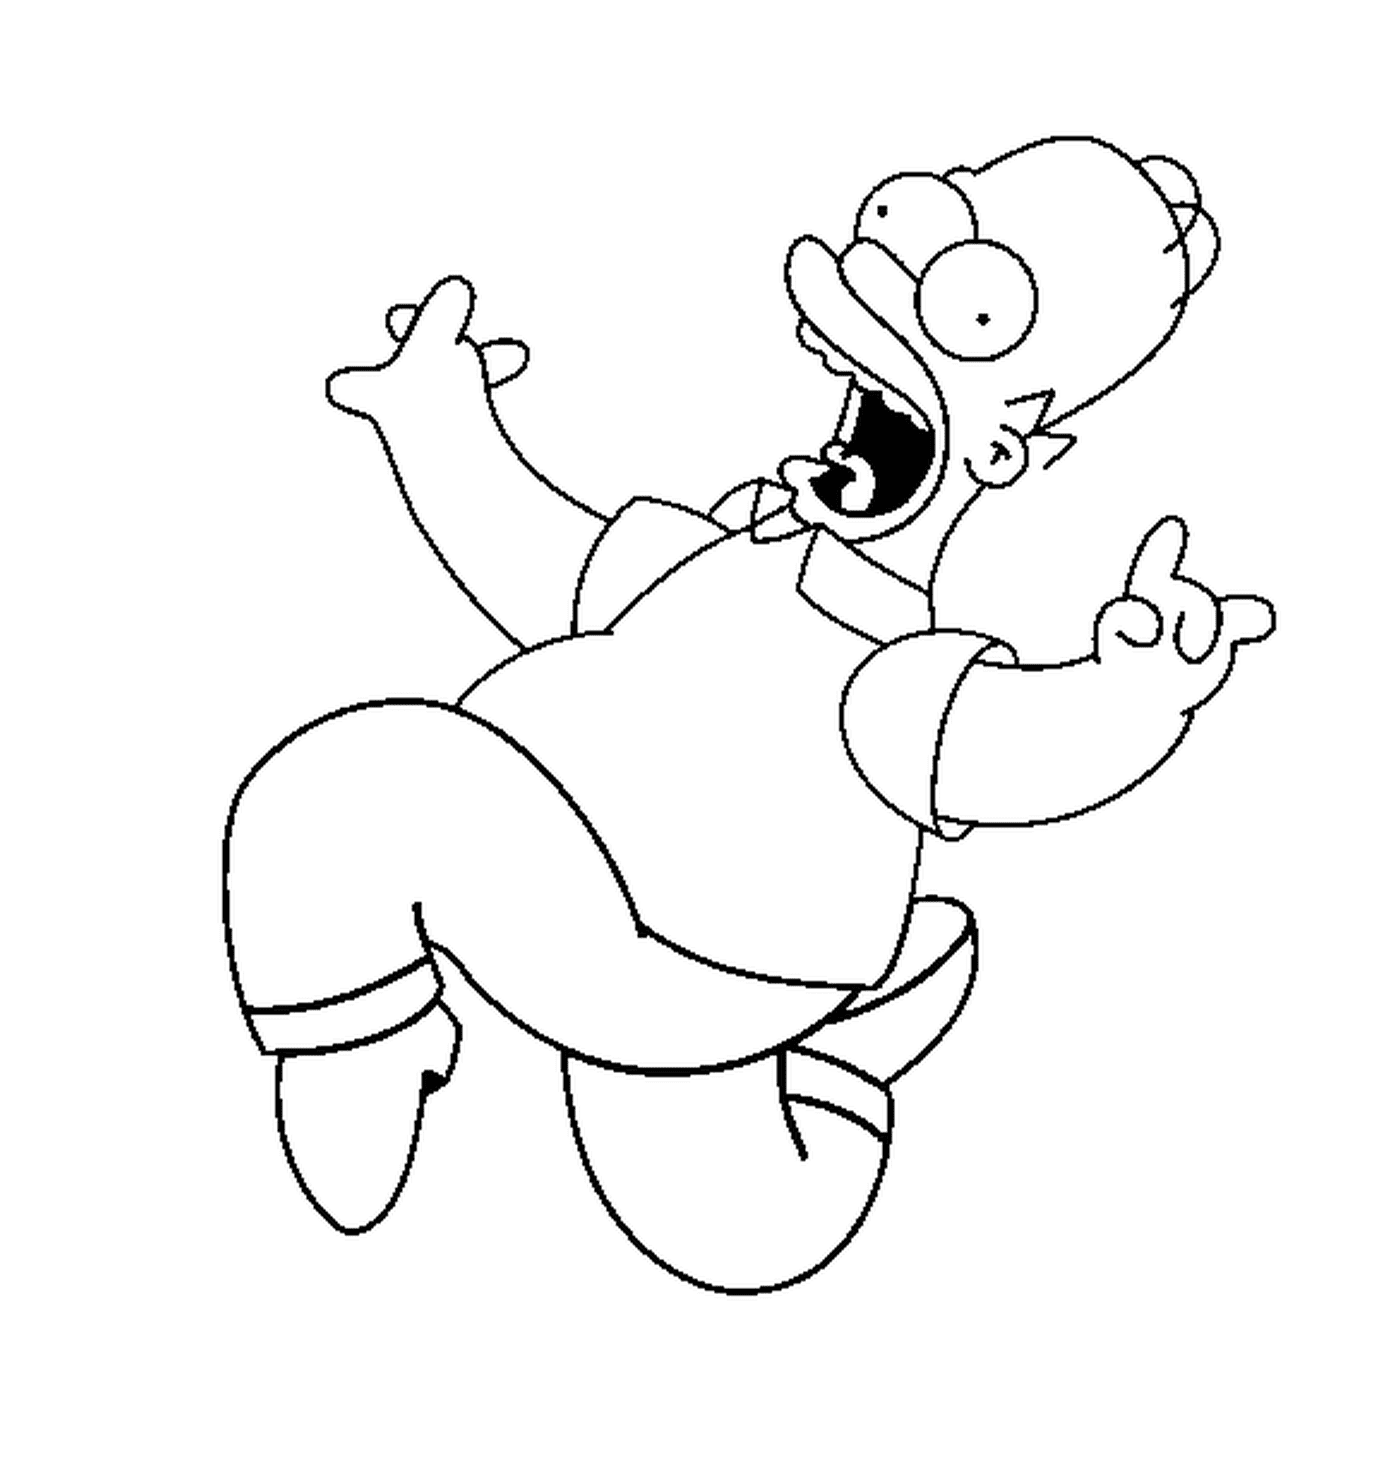  Homer Simpson springt mit Freude 